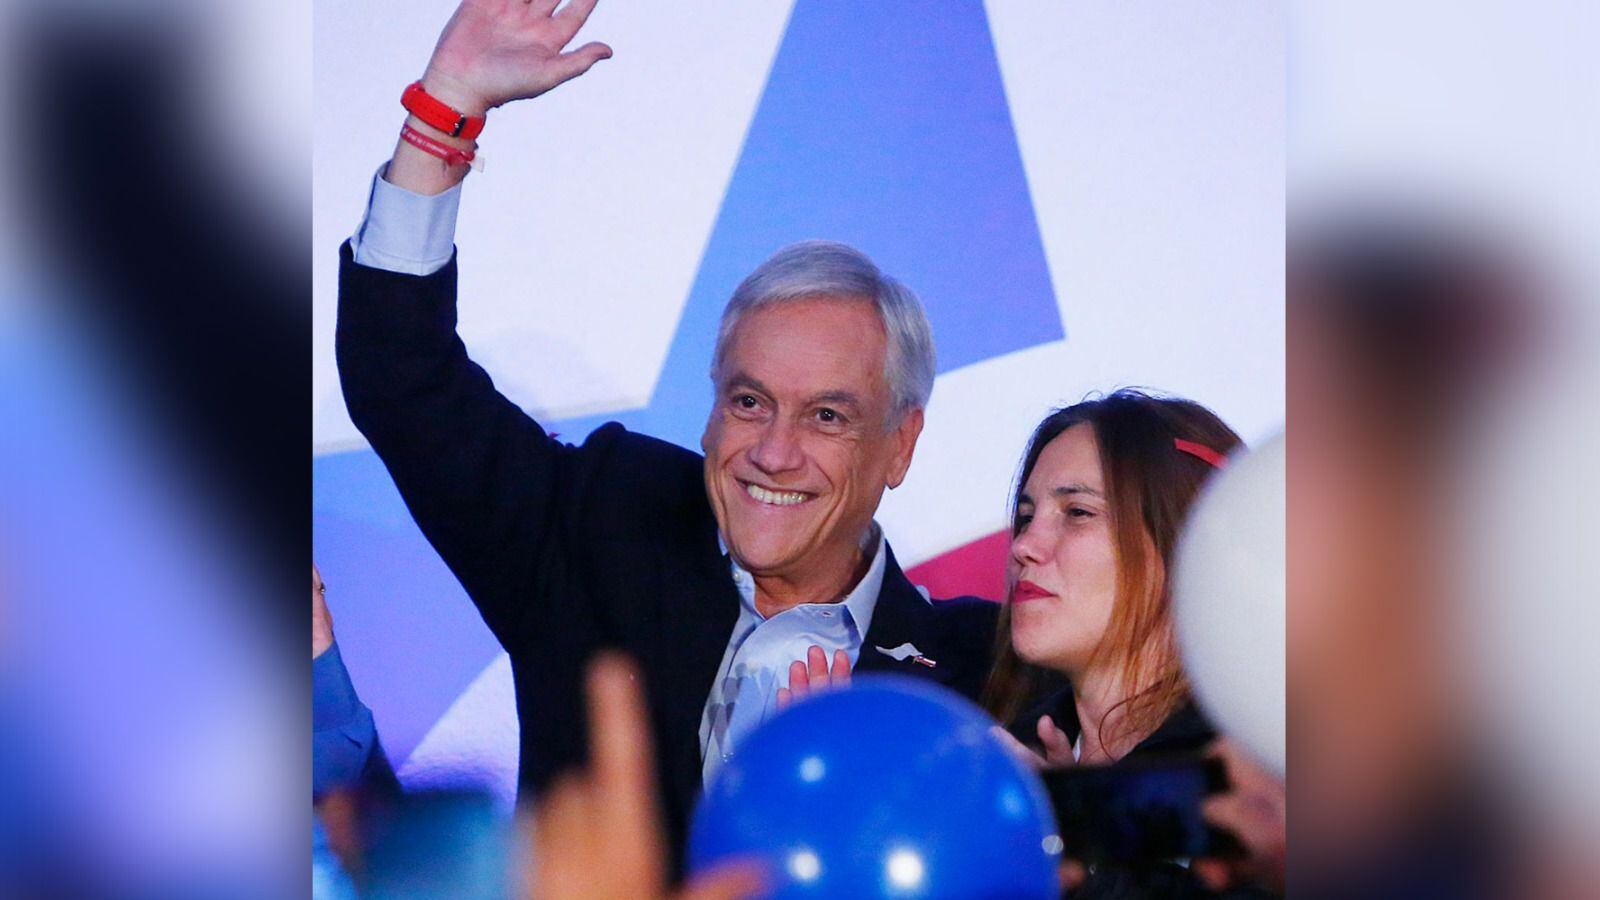 Piñera enfrentó graves problemas durante sus dos periodos como presidente de Chile, como la reconstrucción del país tras un sismo de magnitud 8.8 y la pandemia de COVID-19.